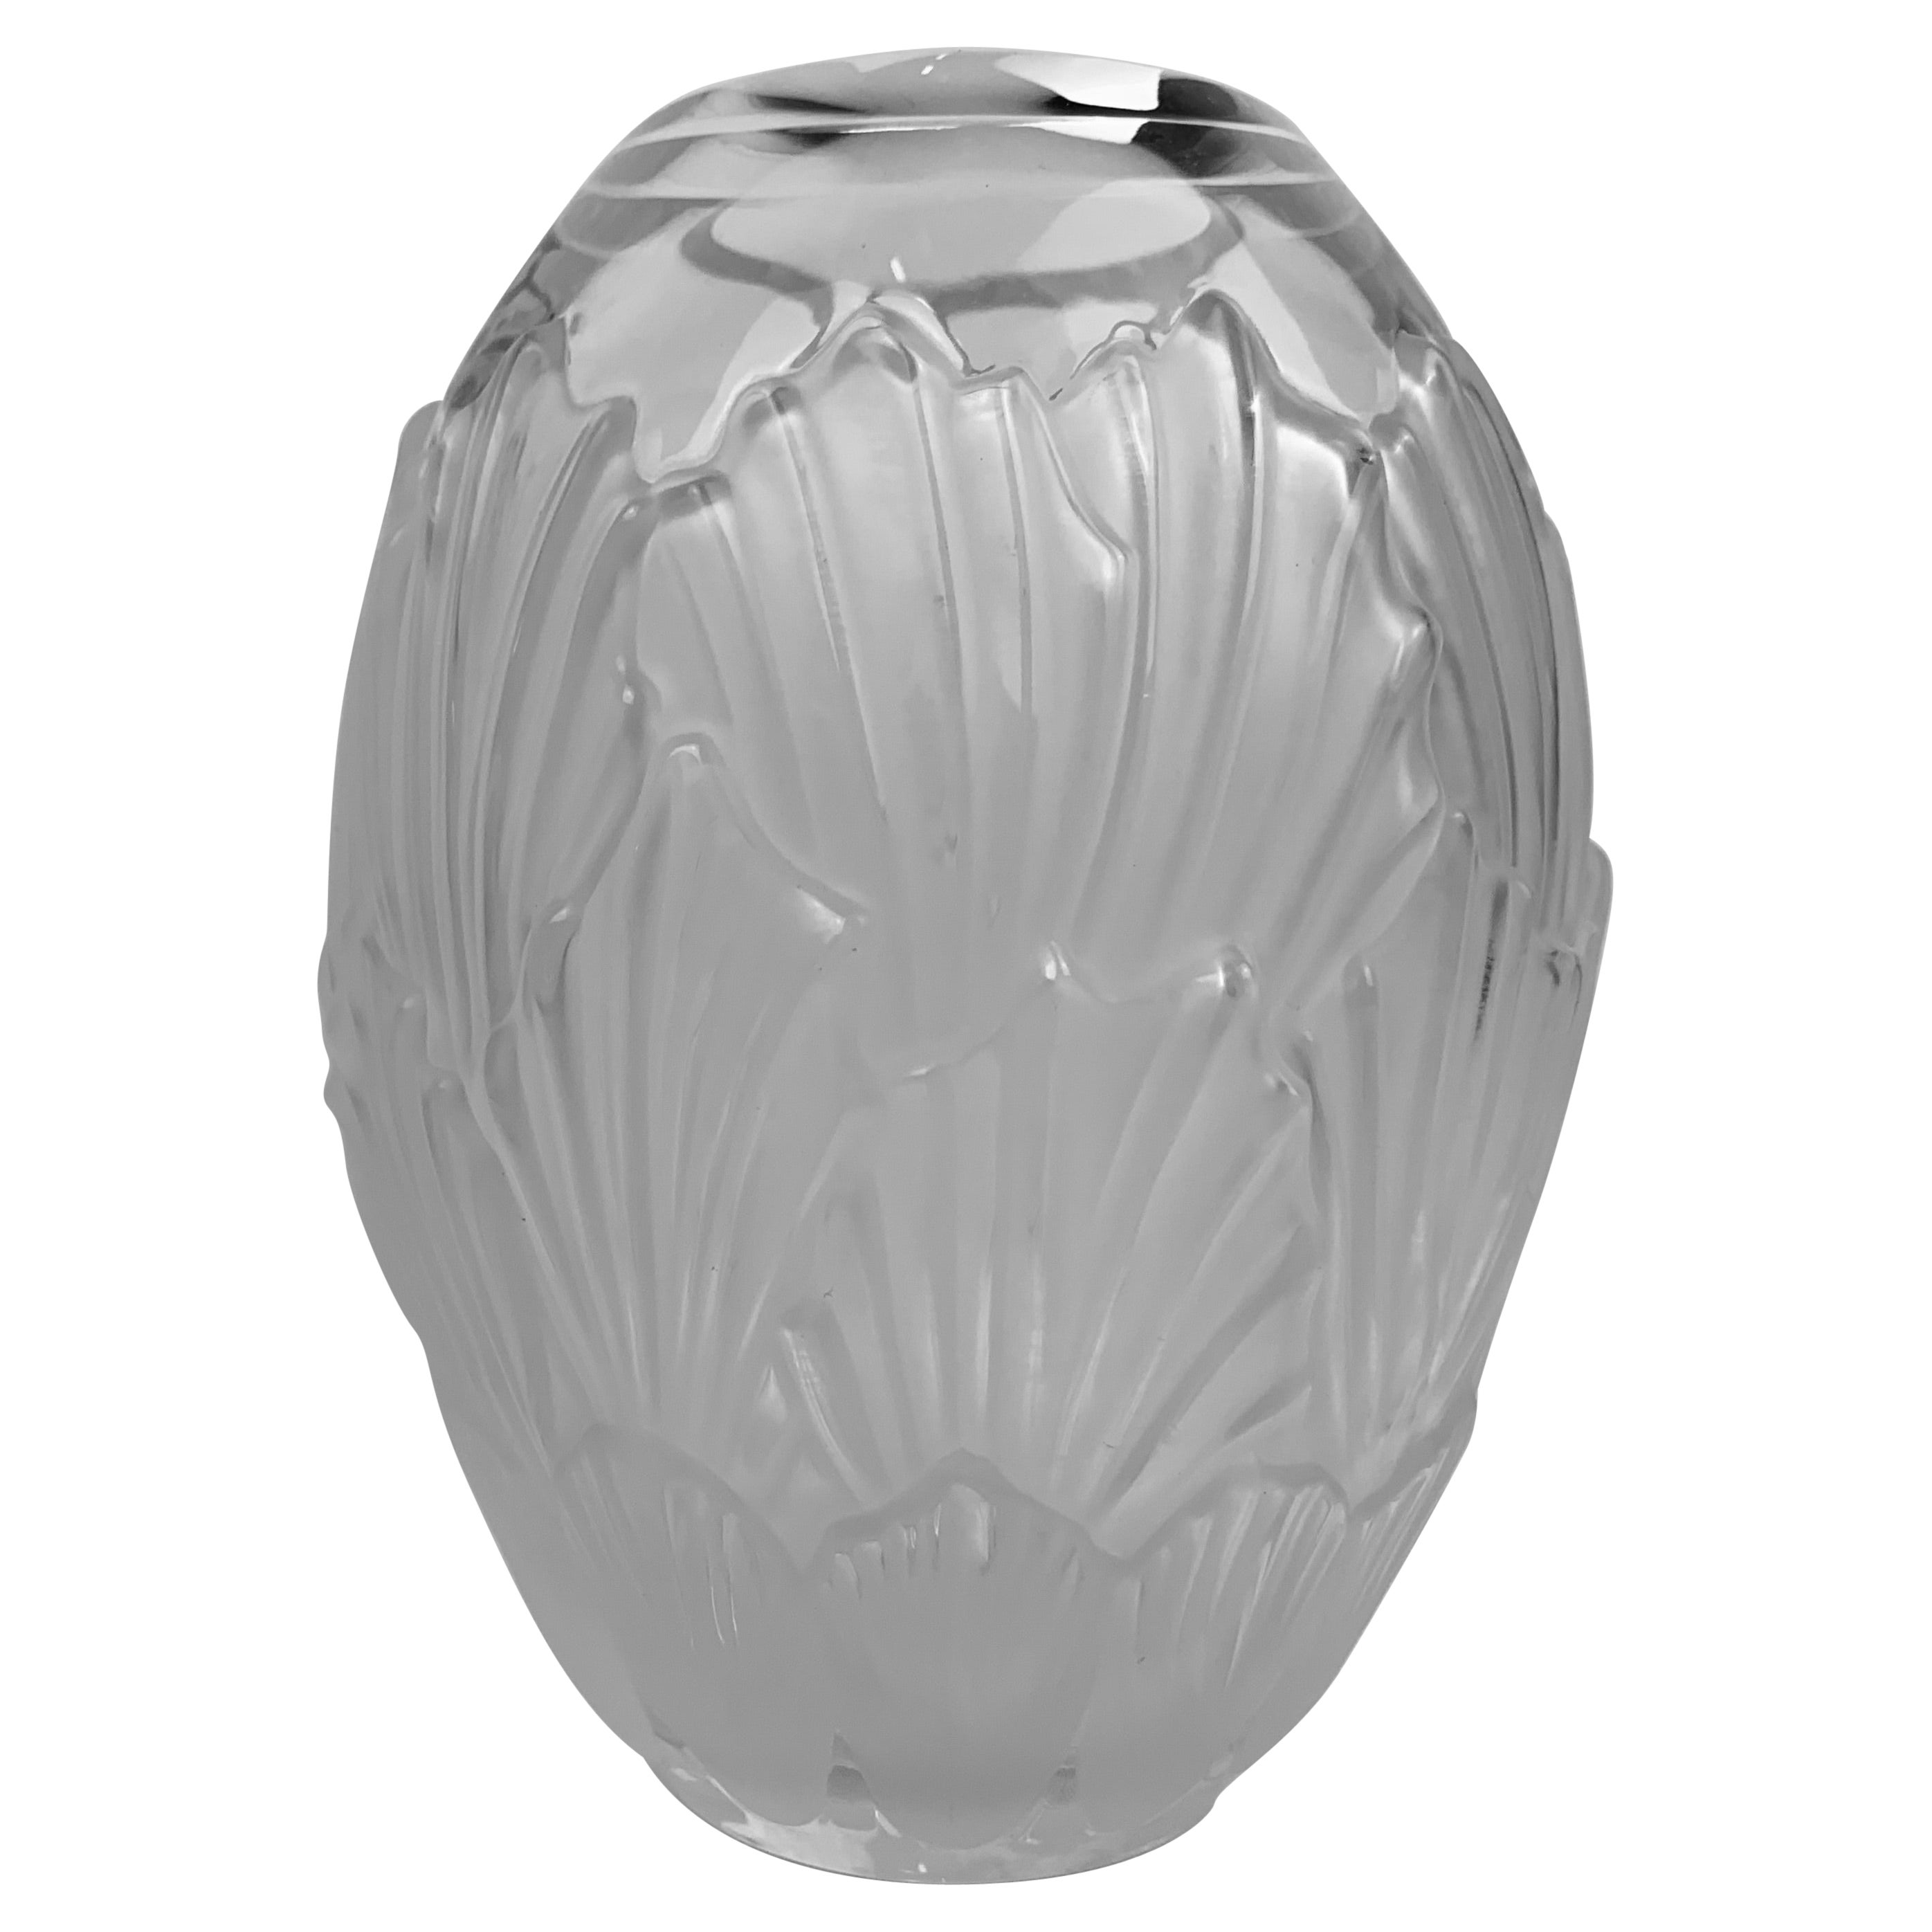 Le vase Sandrift en verre dépoli de Lalique a été produit dans les années 1960 dans le style Art déco. Il est de forme ovoïde avec des coquilles givrées qui se chevauchent. Scribe signé sur le fond Lalique, France.
Mesures : H-8.25'
W-6